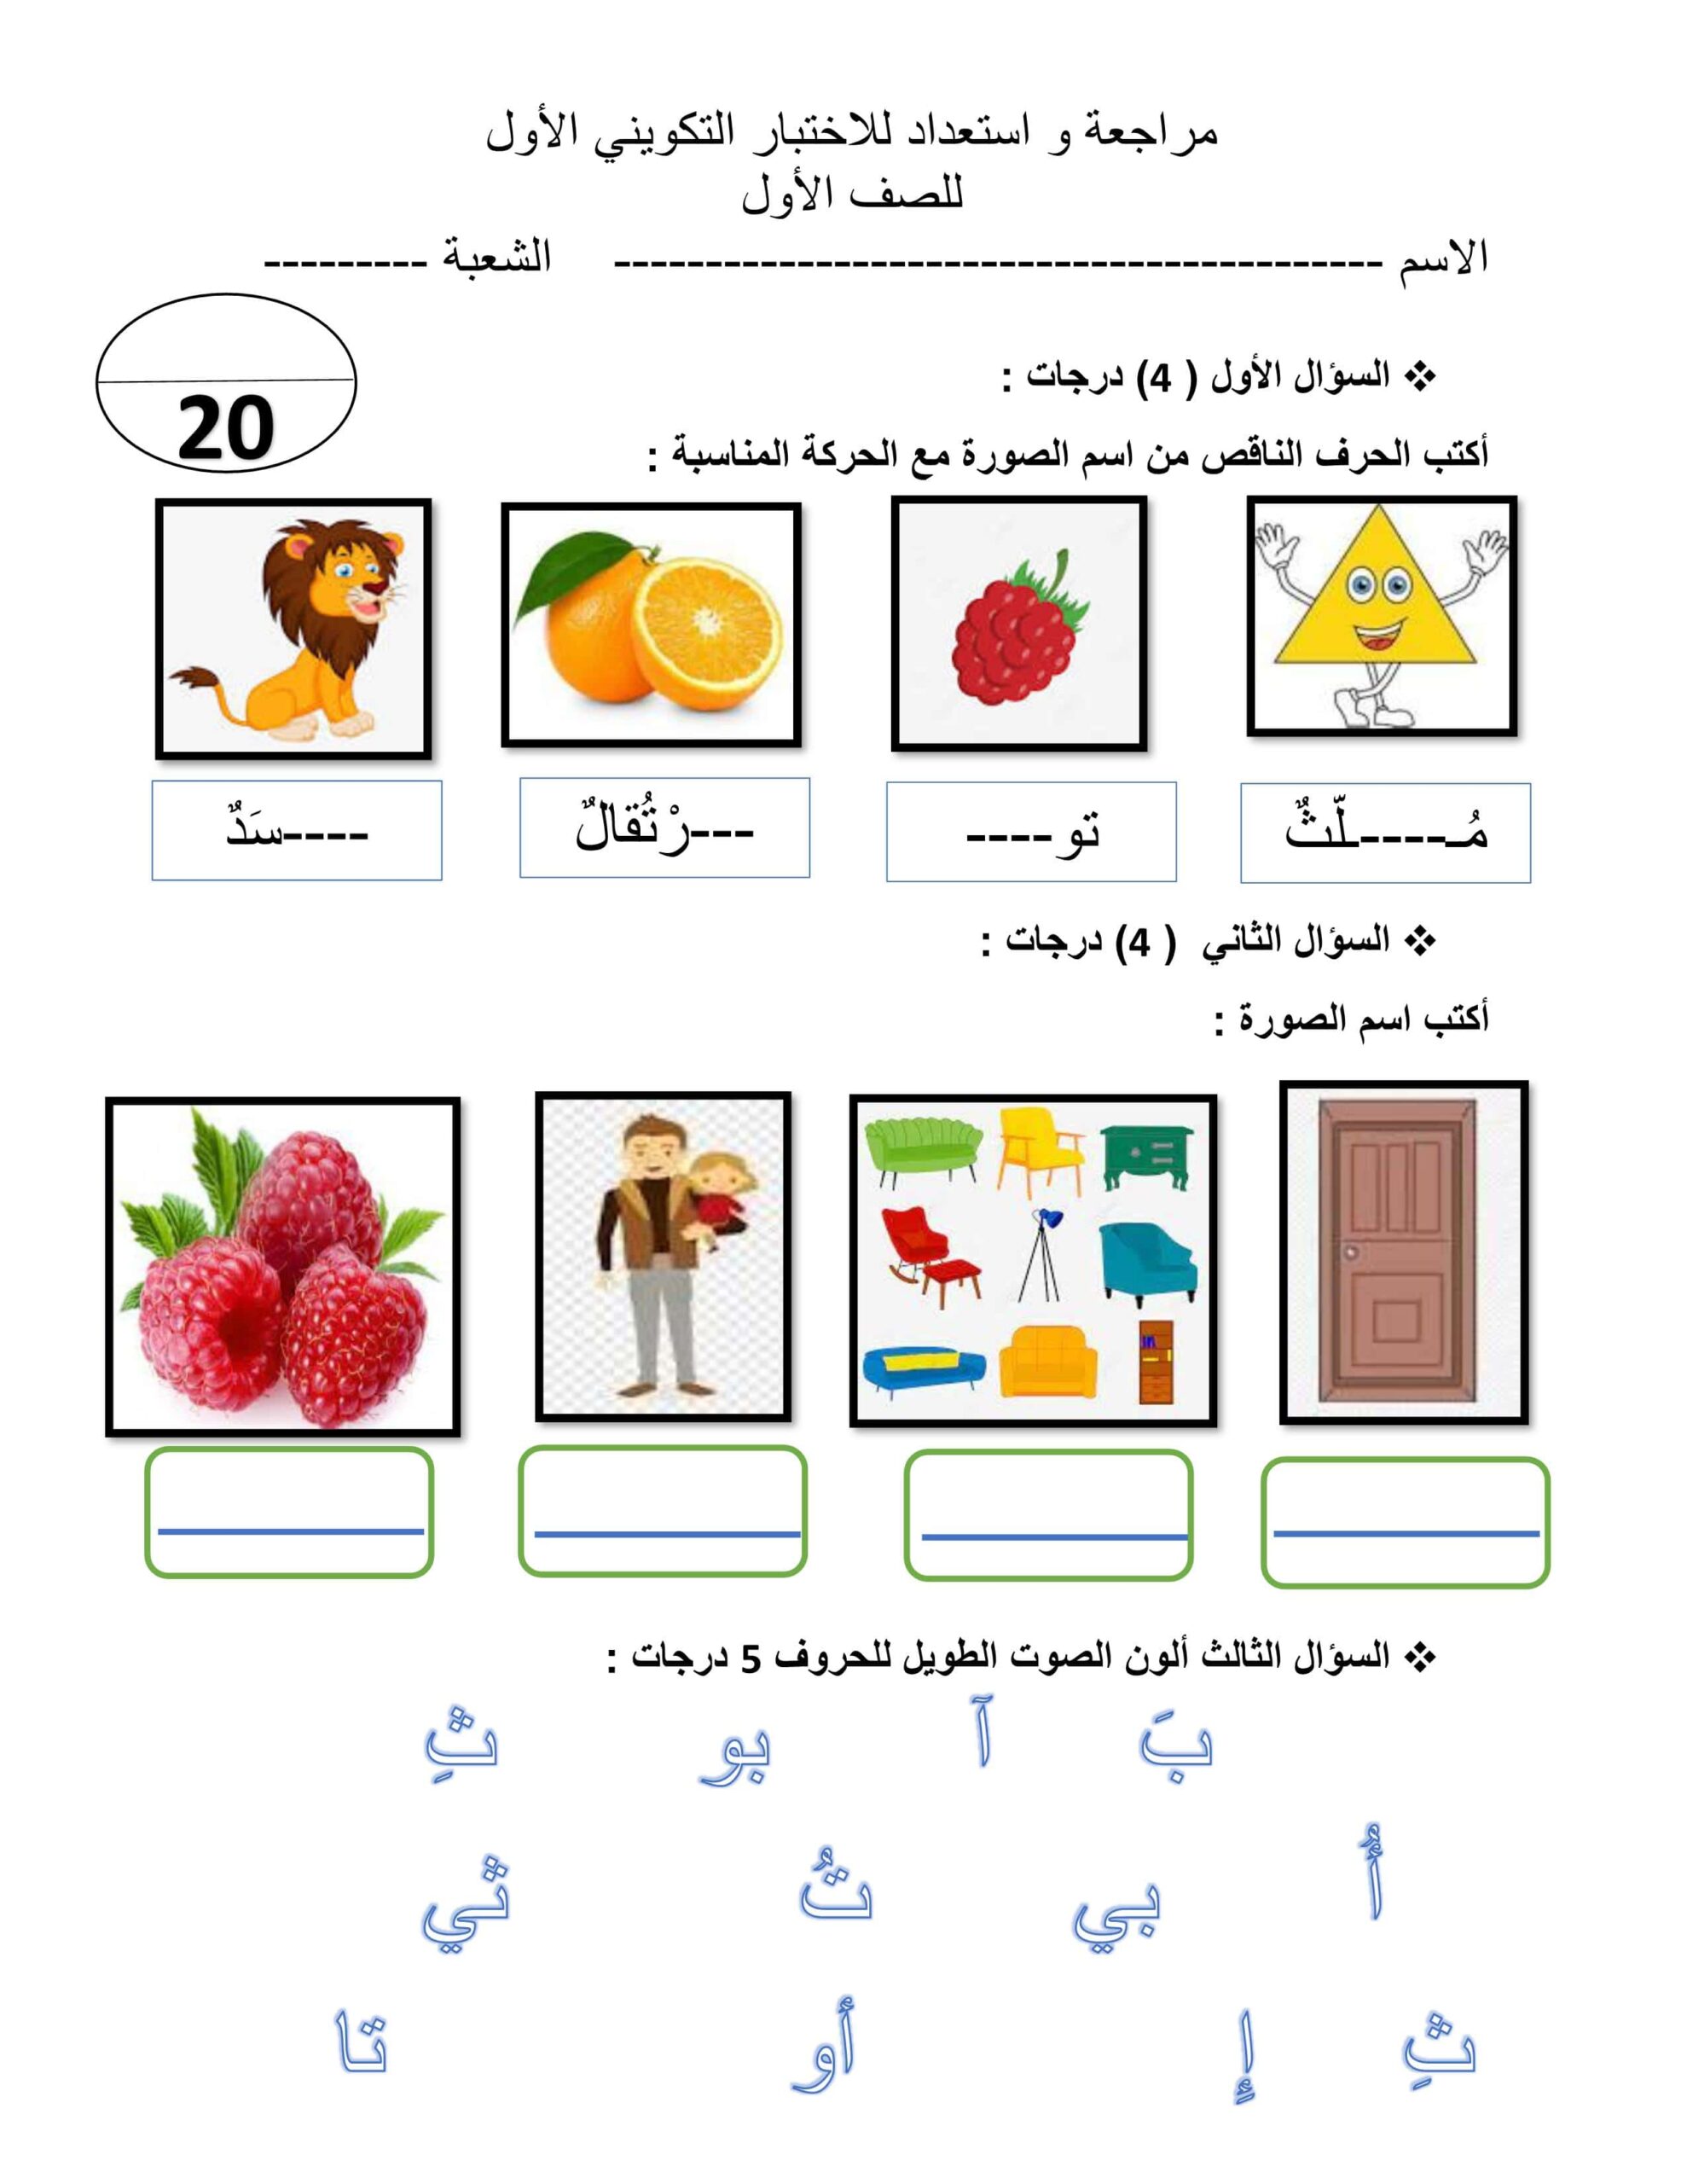 مراجعة واستعداد للاختبار التكويني الأول اللغة العربية الصف الأول